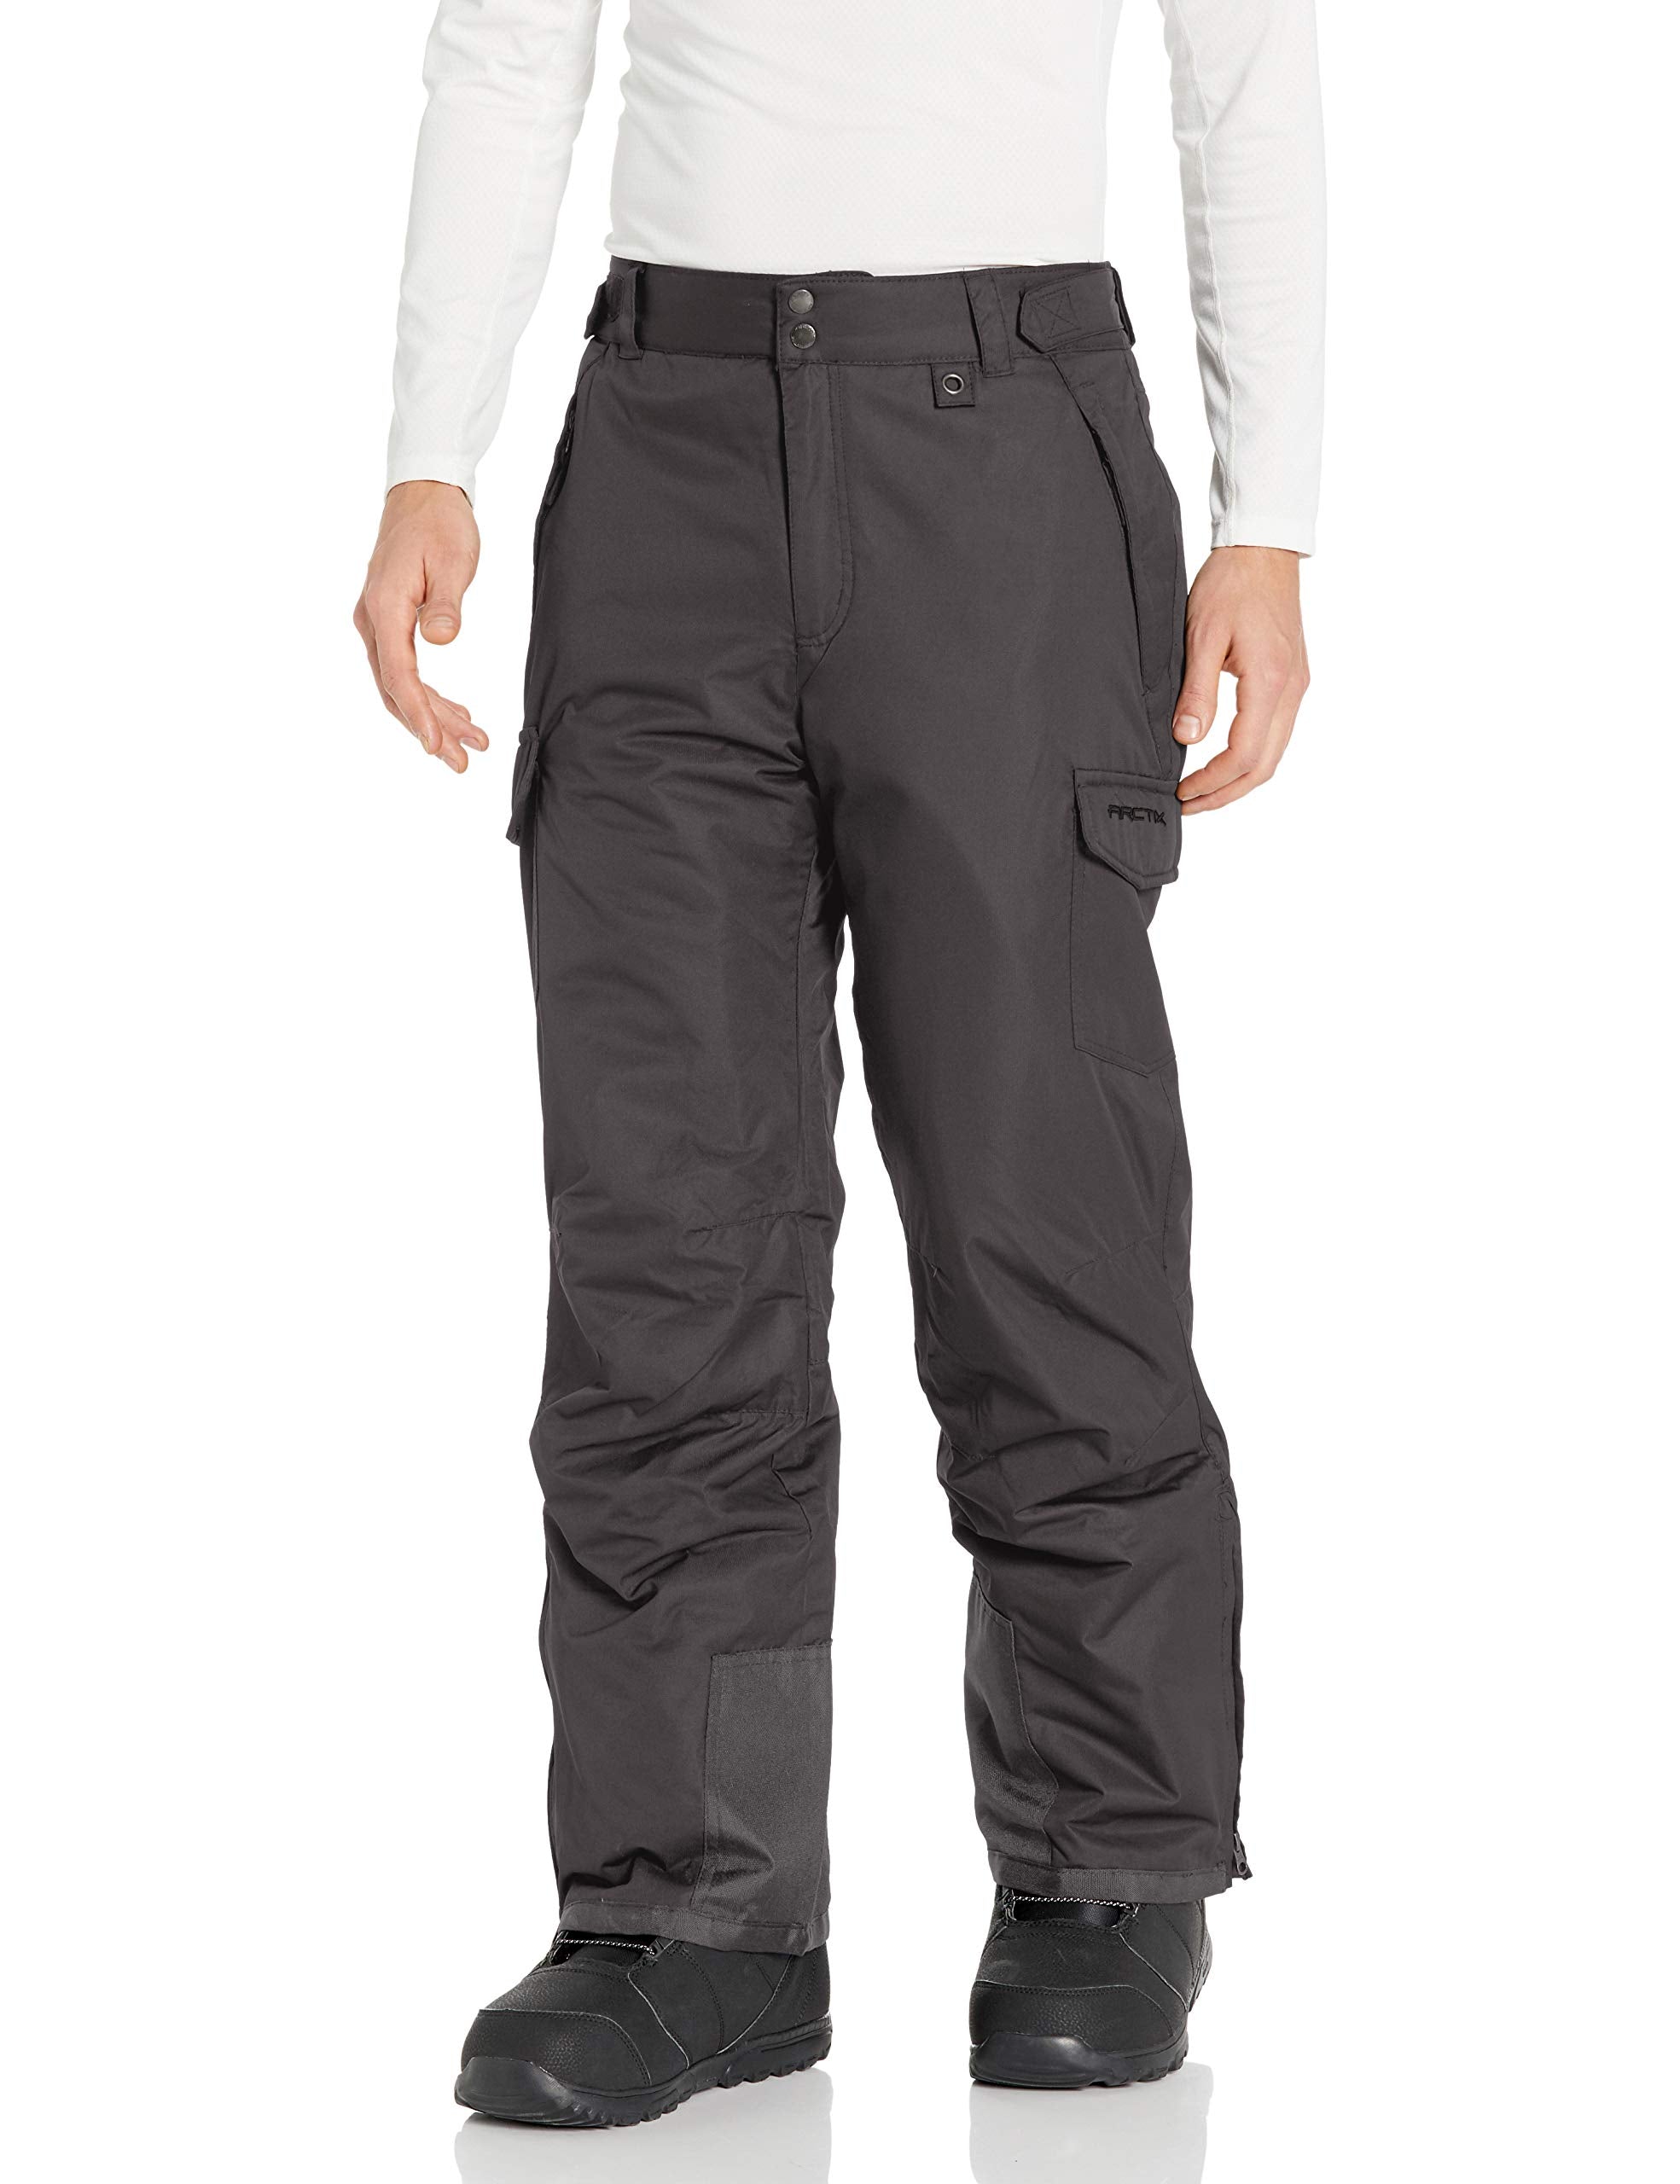 Arctix Men's Essential Snow Pants 32 - Black/Charcoal / Medium/30 Inseam